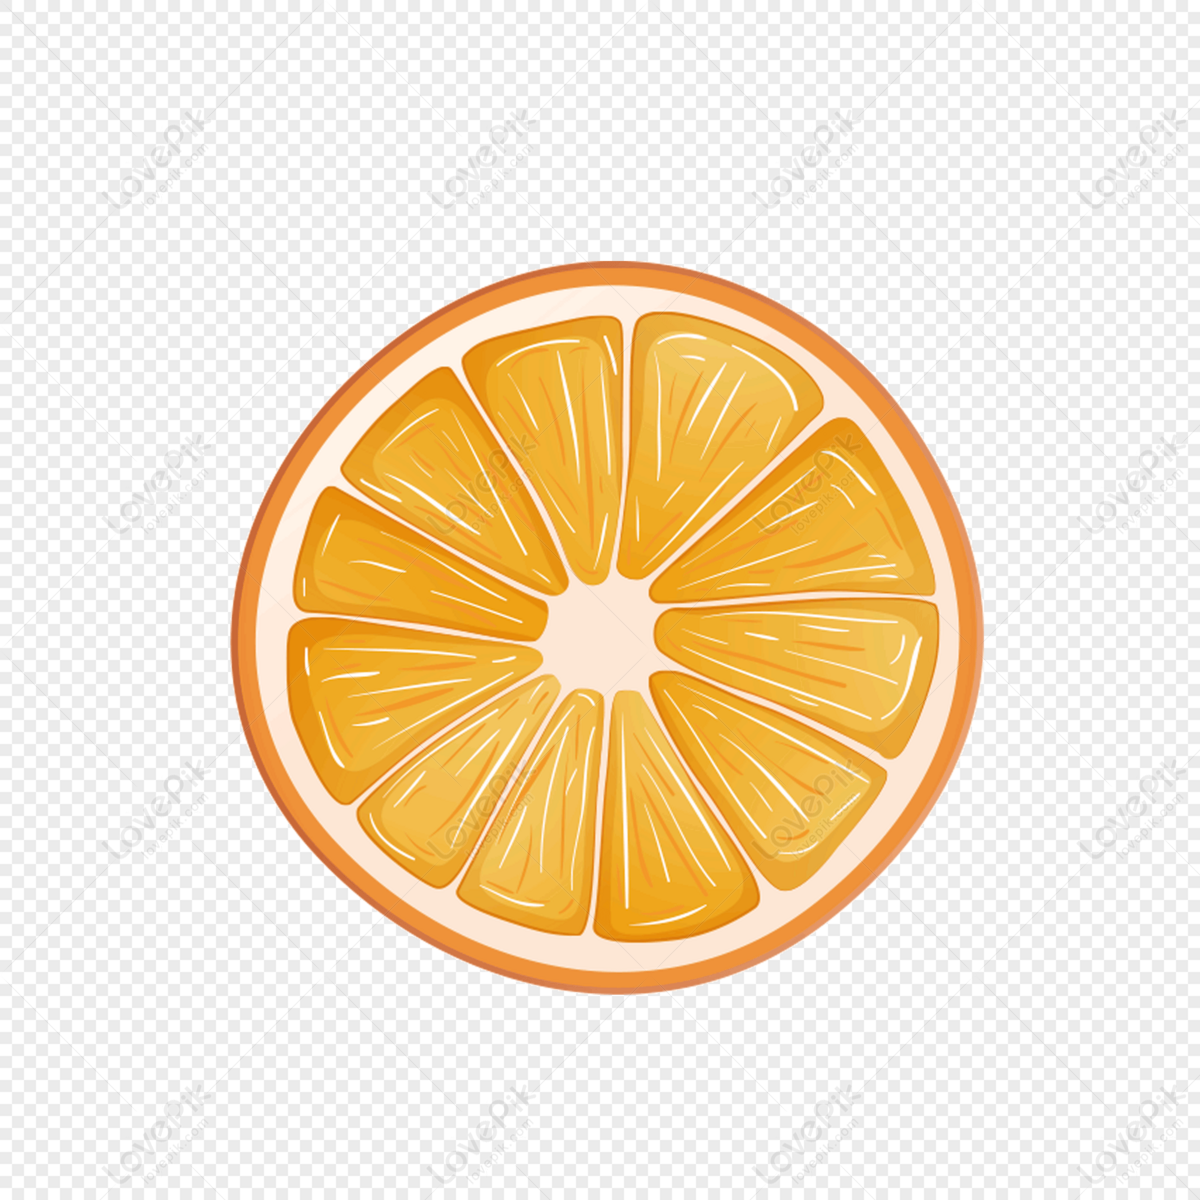 Một nửa quả cam - Bức ảnh về một nửa quả cam đầy màu sắc sẽ khiến bạn thèm muốn ăn thử ngay lập tức. Đây là món trái cây giàu vitamin và chất dinh dưỡng, rất hữu ích cho sức khỏe của bạn. Hãy xem bức ảnh để biết thêm chi tiết về loại trái cây tuyệt vời này.